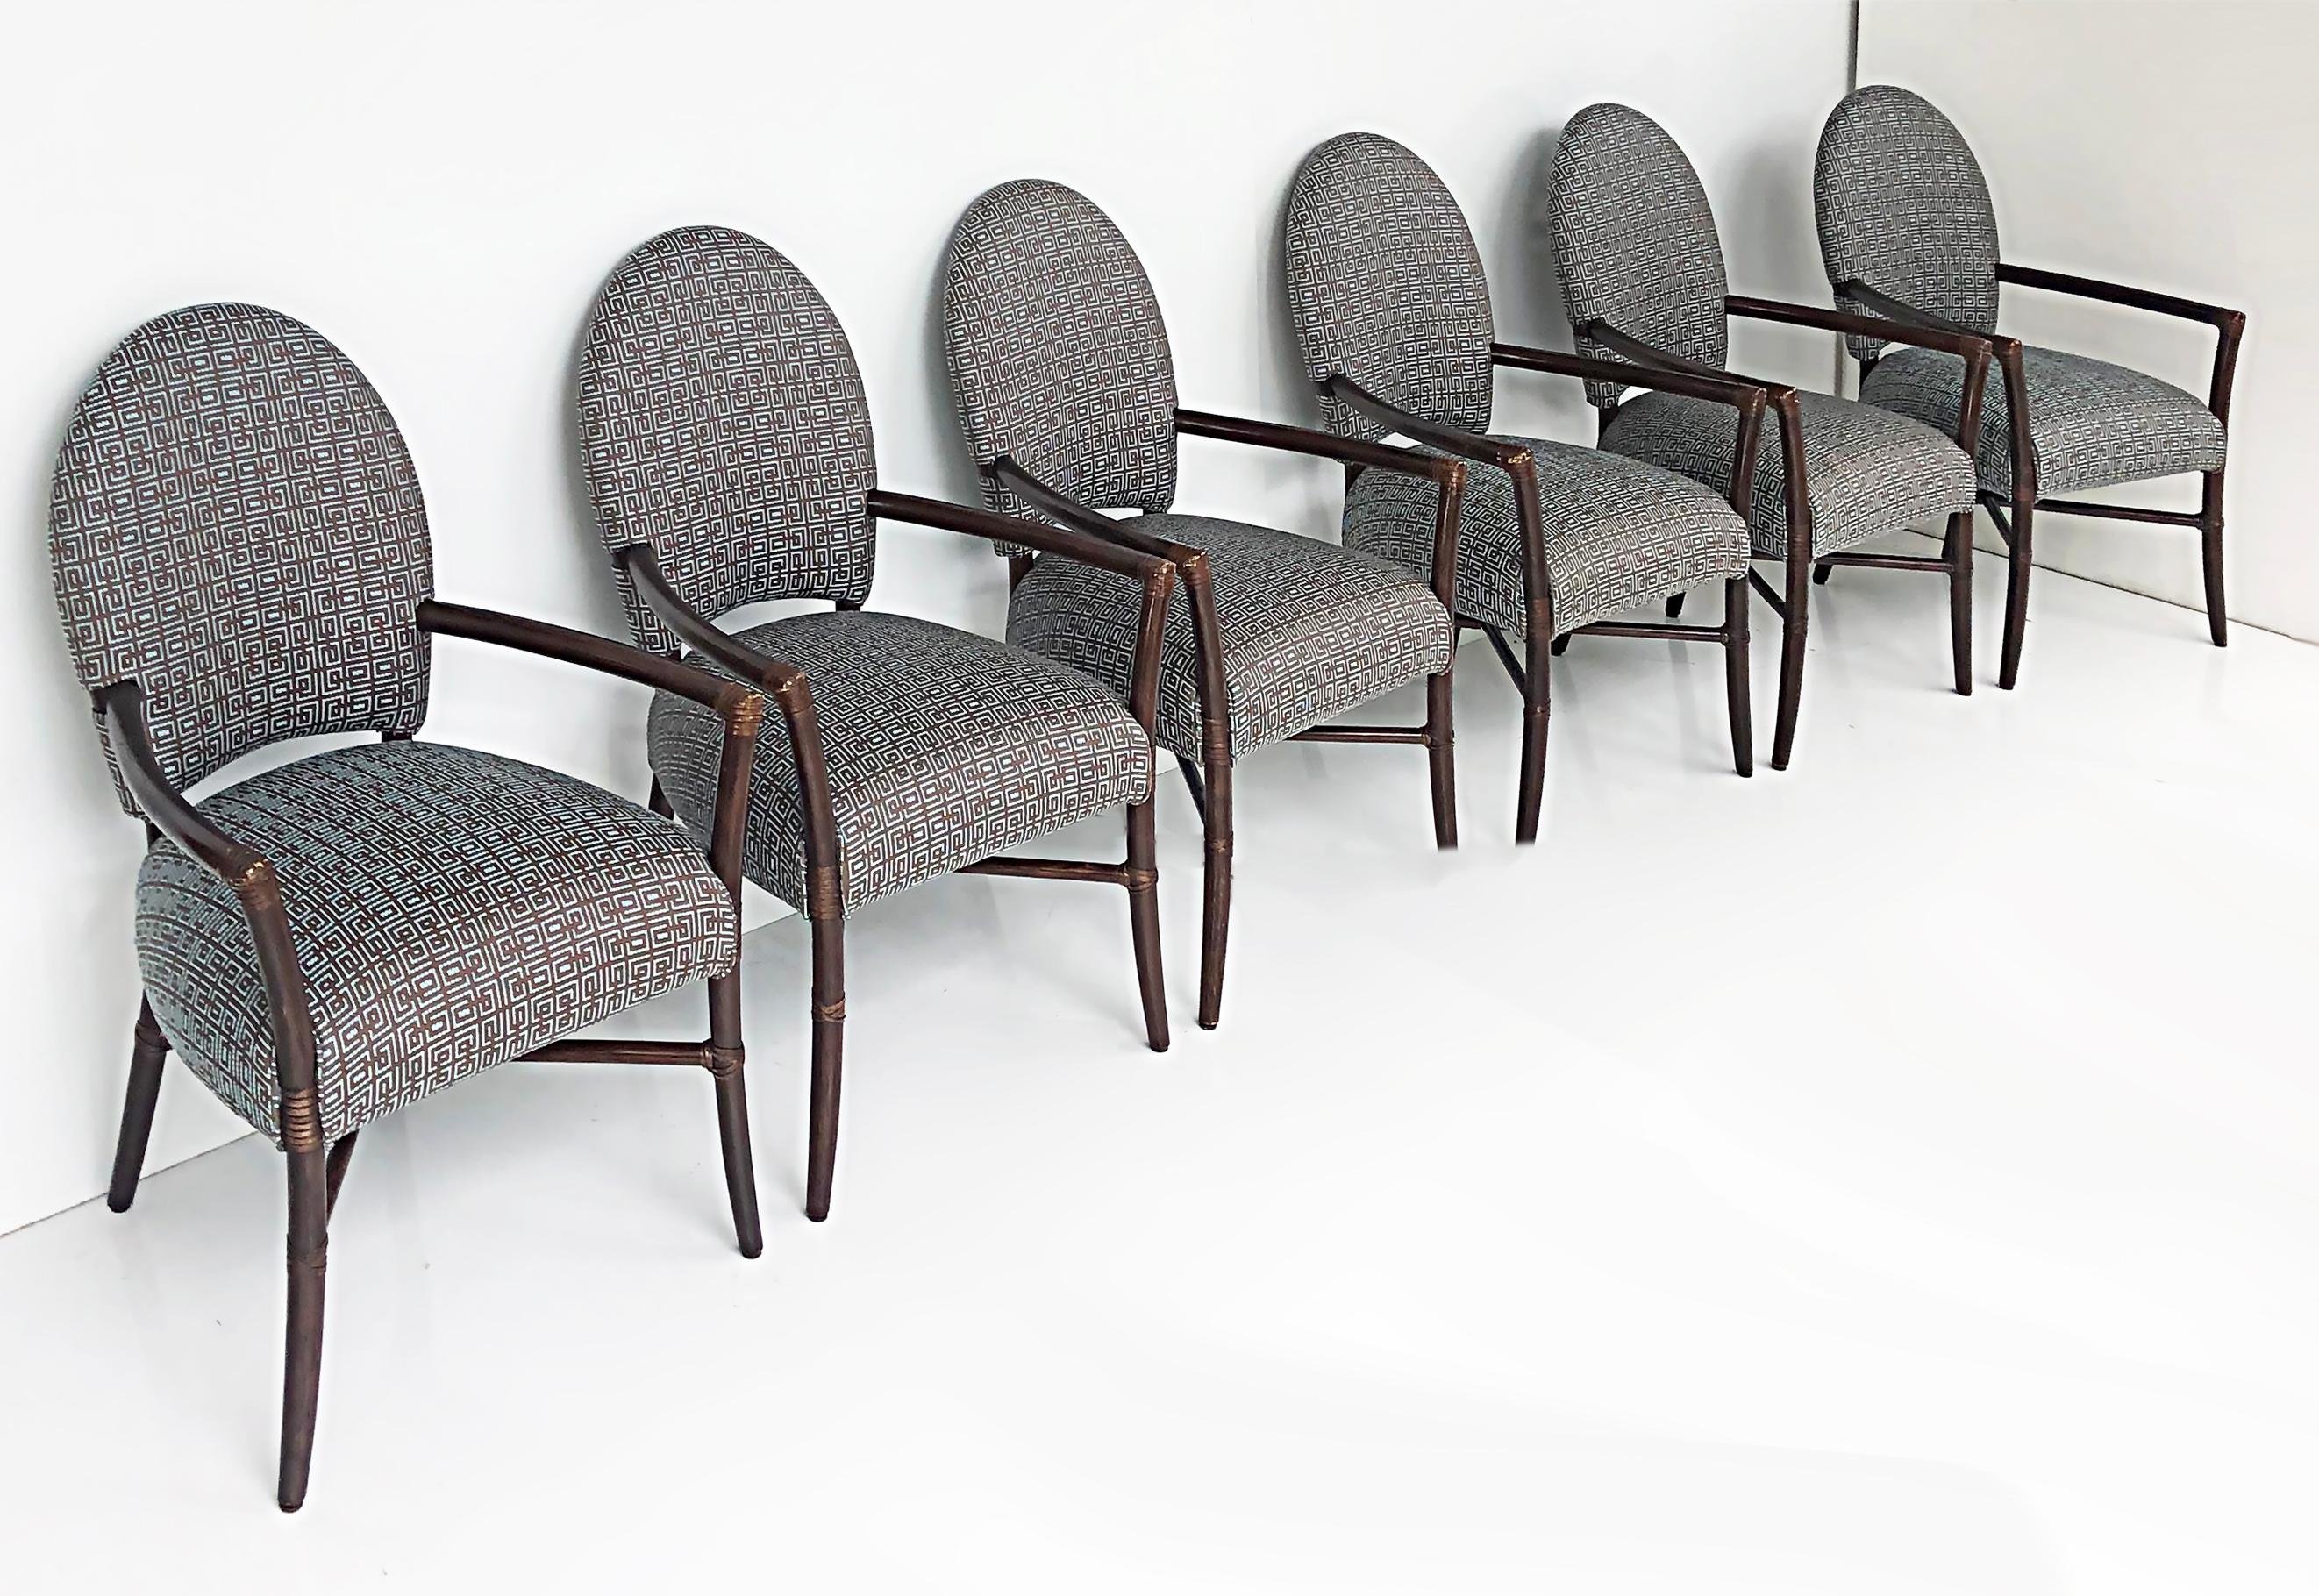 Vintage McGuire San Francisco fauteuils de salle à manger, rembourré Set of 6 

Nous proposons à la vente un élégant ensemble de 6 fauteuils rembourrés McGuire San Francisco. Les cadres sont enveloppés de cuir au niveau des joints et les sièges et